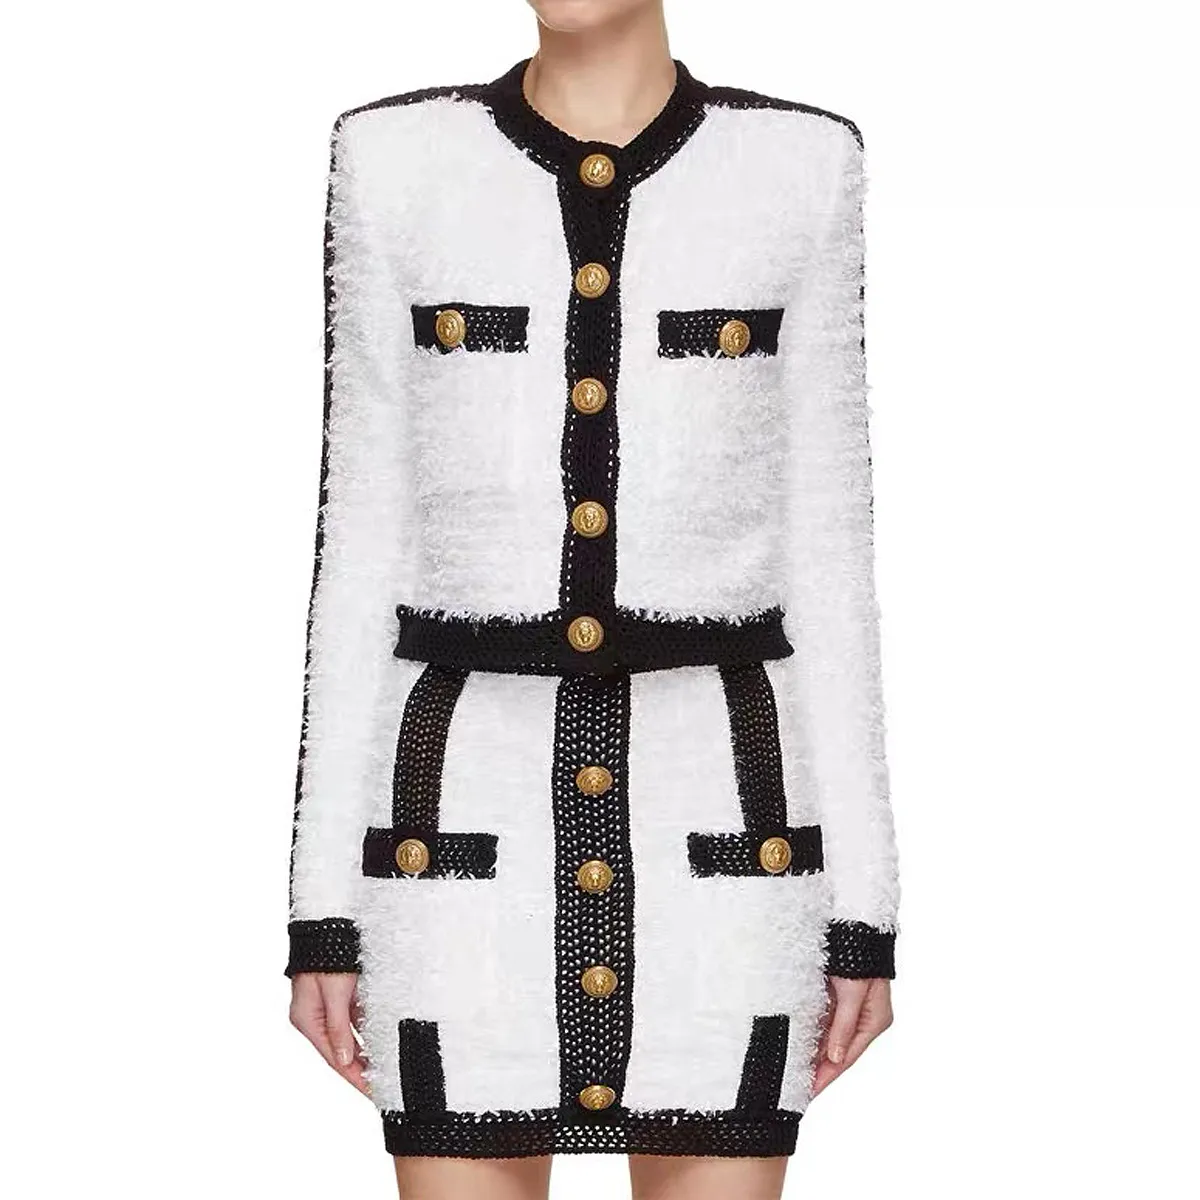 Nuevo estilo, abrigo de lana de punto de alta calidad para mujer, falda a juego con botones de cara de león de Metal clásico, vestido de dos piezas